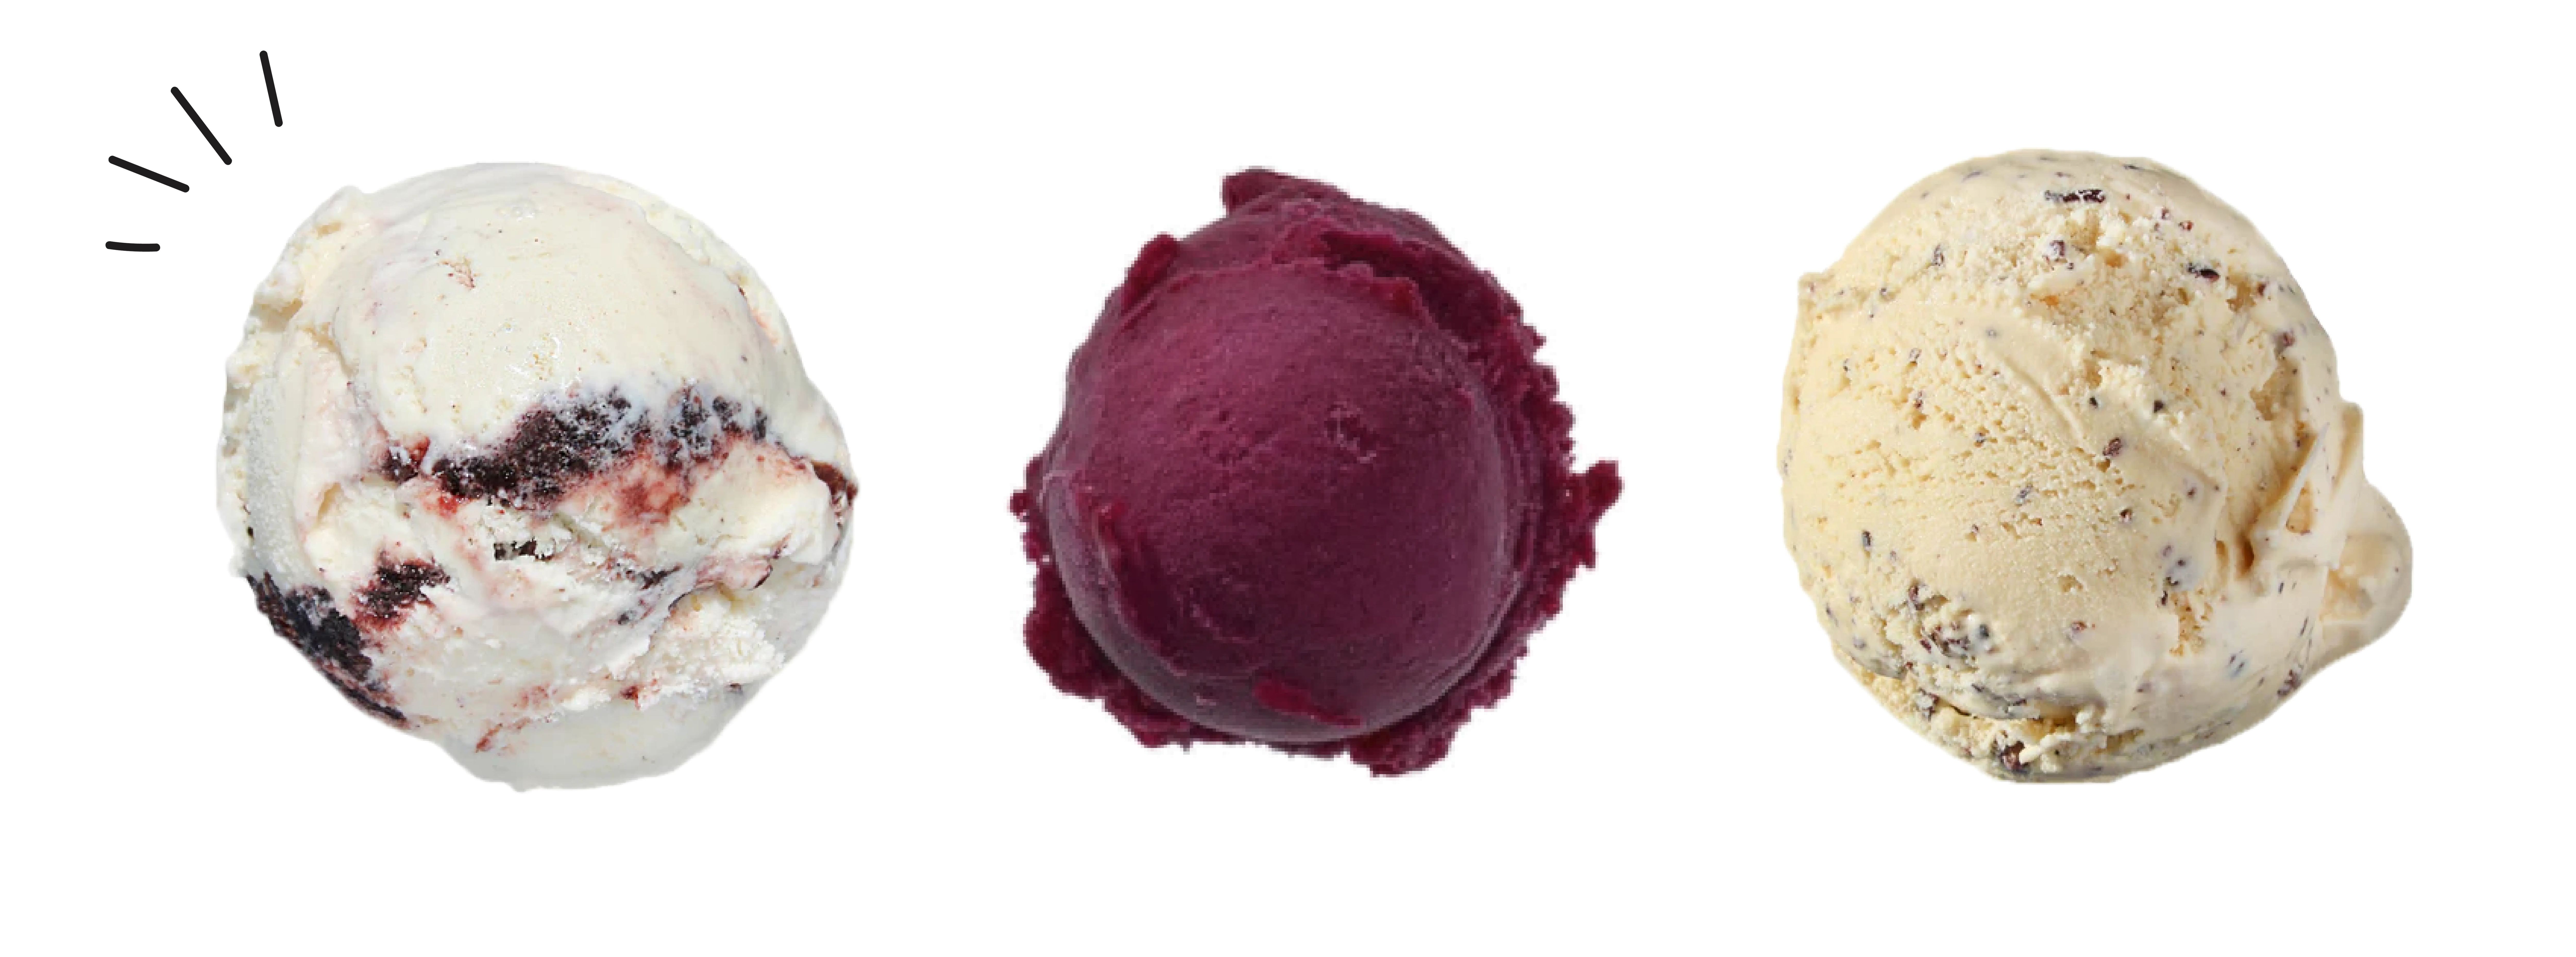 icecream scoops